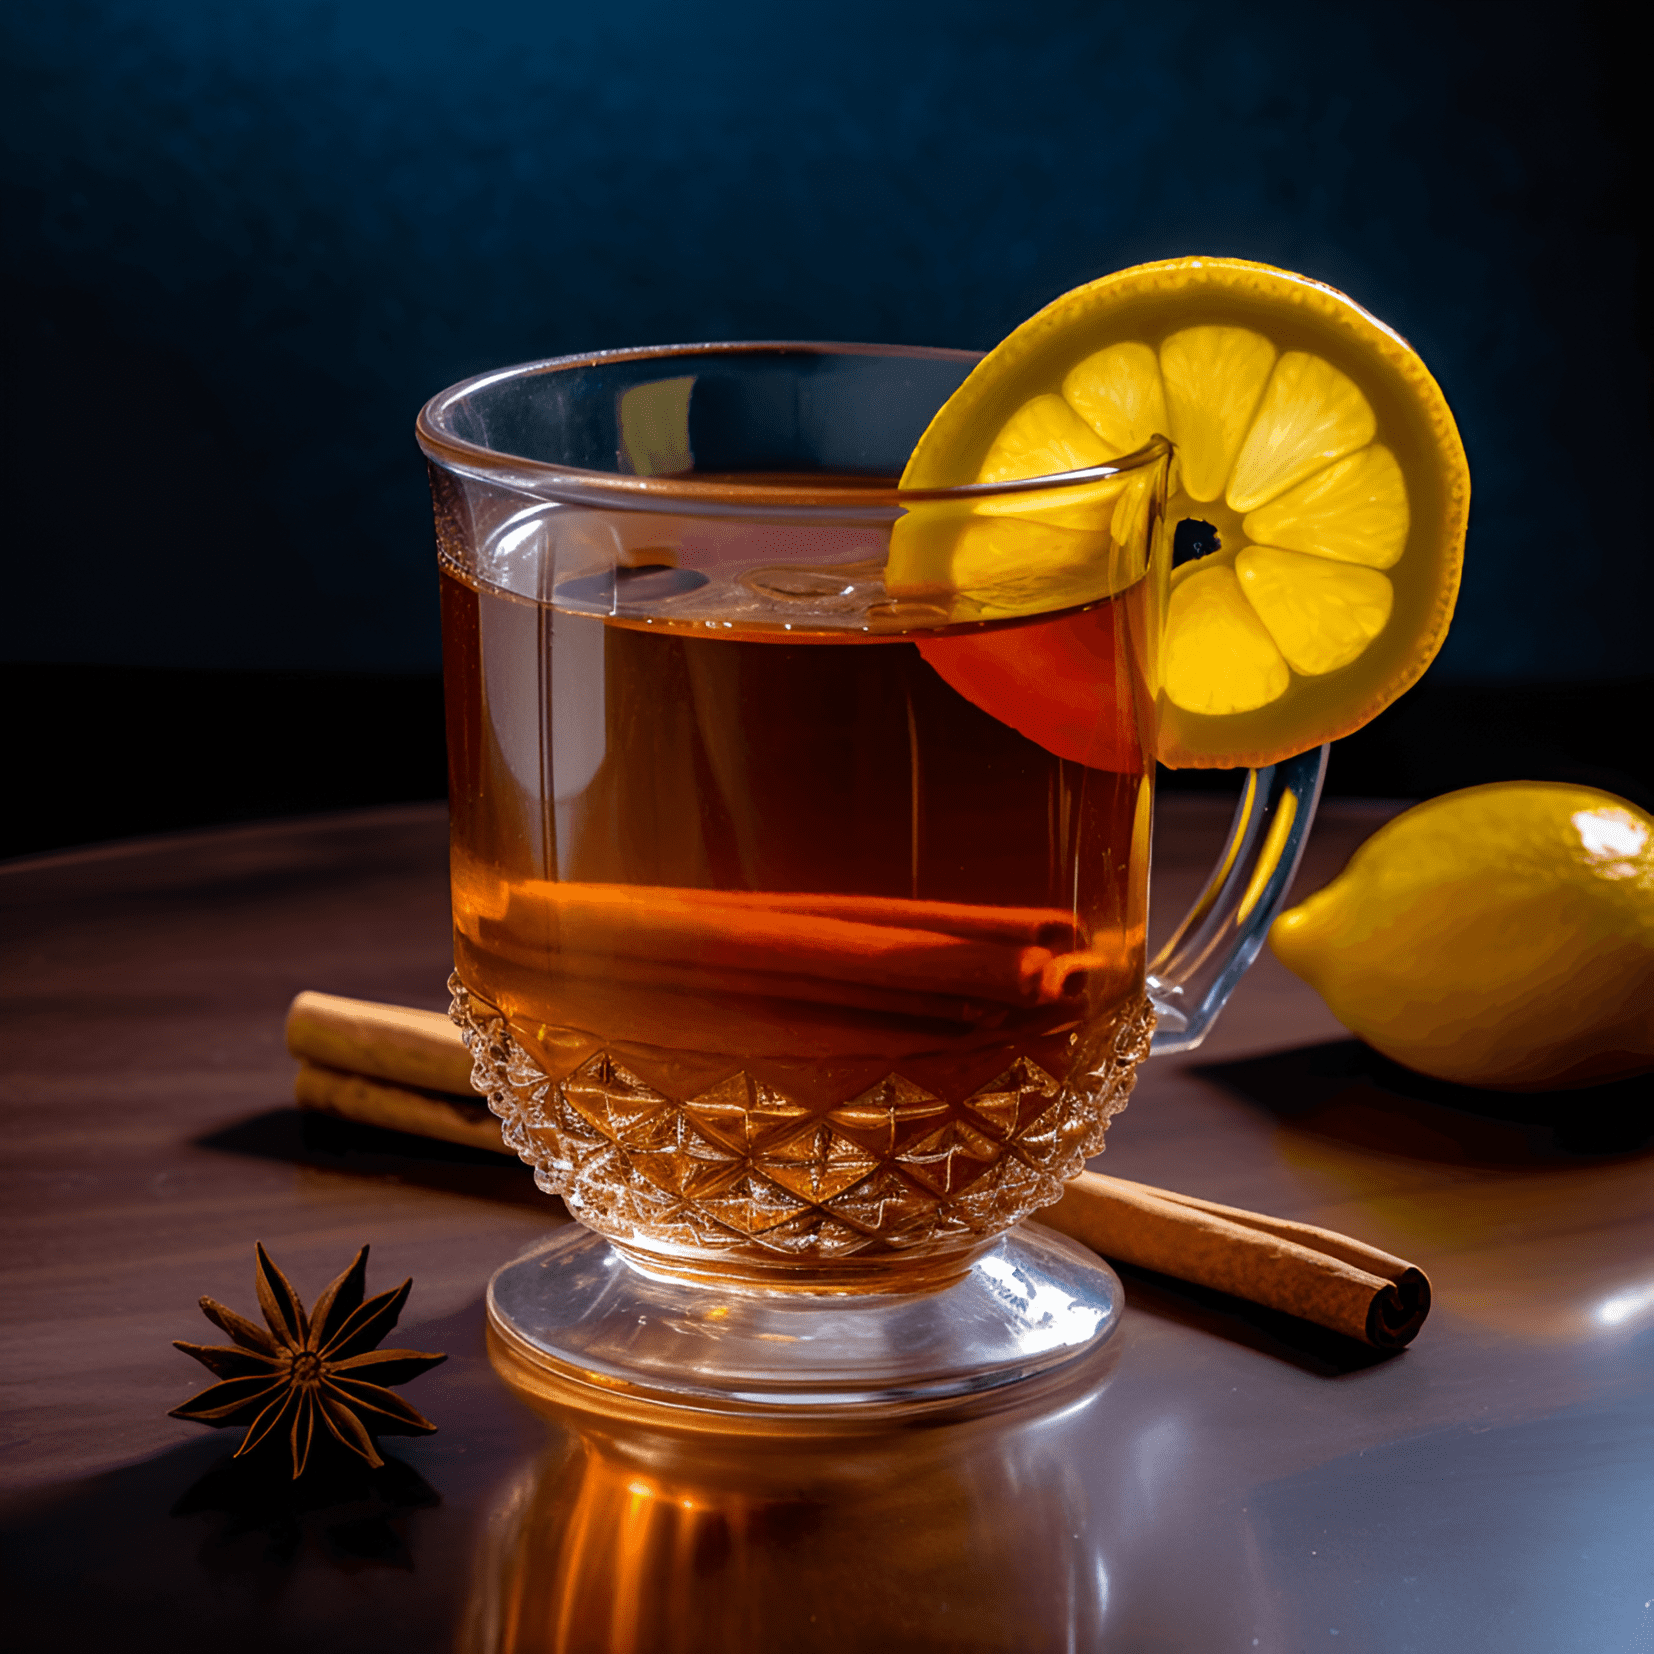 El cóctel Gunfire tiene un sabor cálido, robusto y ligeramente dulce. El té negro fuerte proporciona una base audaz y terrosa, mientras que el ron agrega una dulzura rica y suave. La combinación crea una bebida reconfortante y vigorizante.